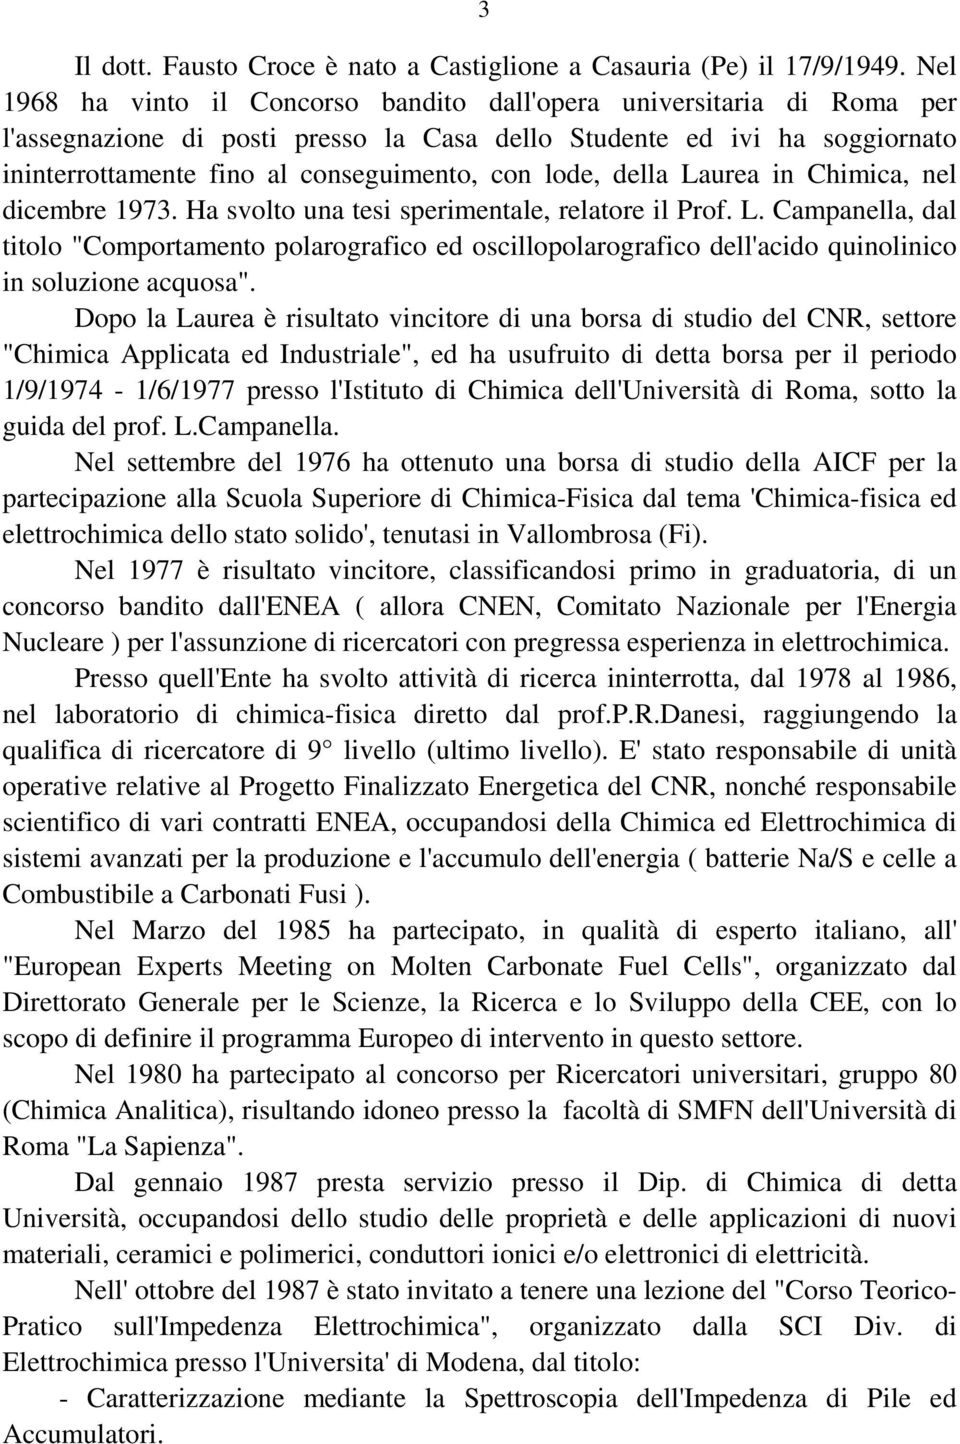 lode, della Laurea in Chimica, nel dicembre 1973. Ha svolto una tesi sperimentale, relatore il Prof. L. Campanella, dal titolo "Comportamento polarografico ed oscillopolarografico dell'acido quinolinico in soluzione acquosa".